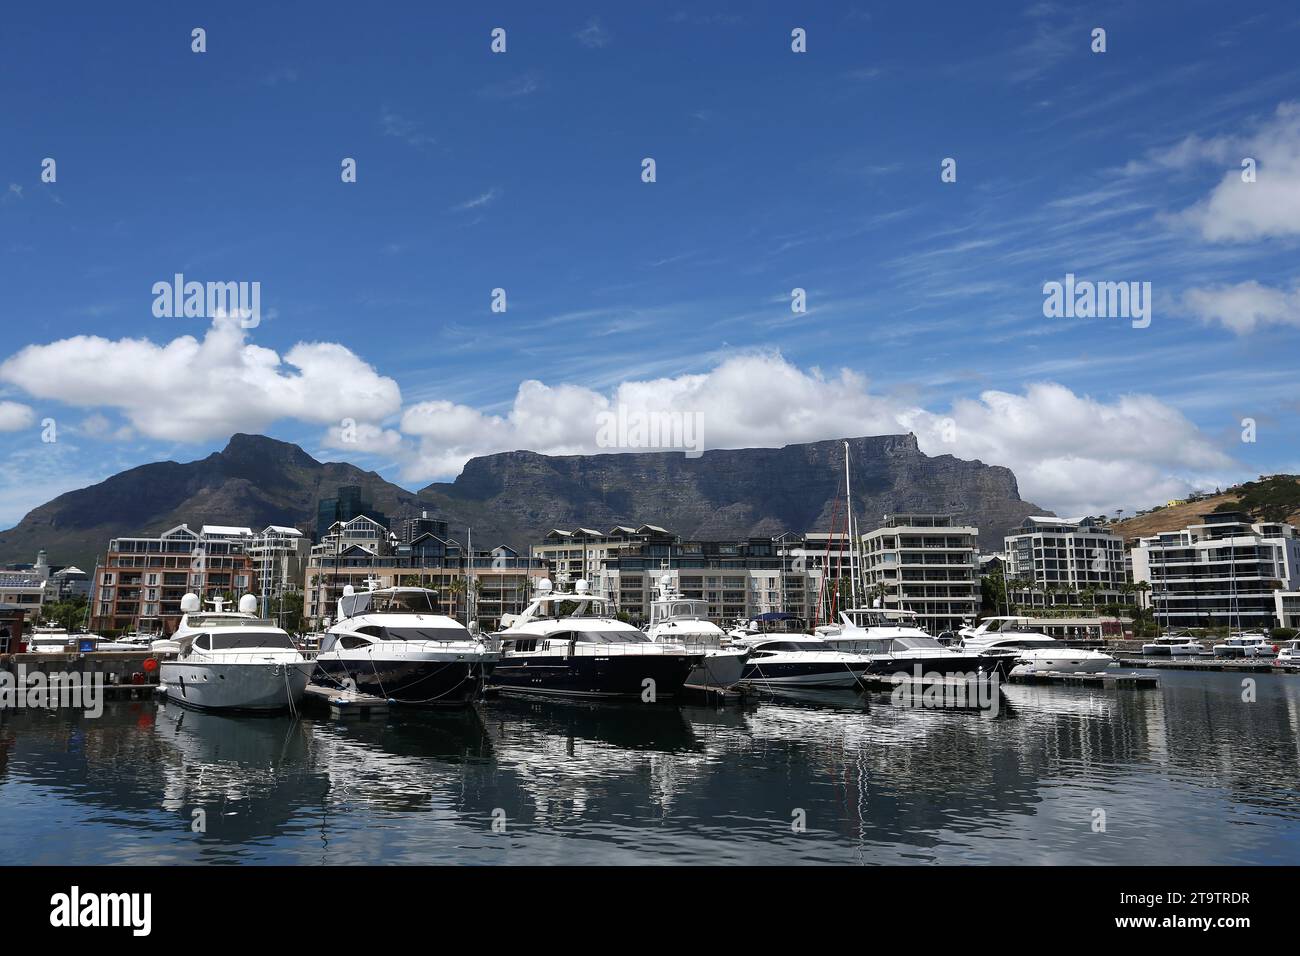 Ein allgemeiner Blick auf Luxusyachten, die mit weißen flauschigen Wolken vertäut sind und teilweise den wunderschönen Tafelberg in Kapstadt, Südafrika, bedecken Stockfoto